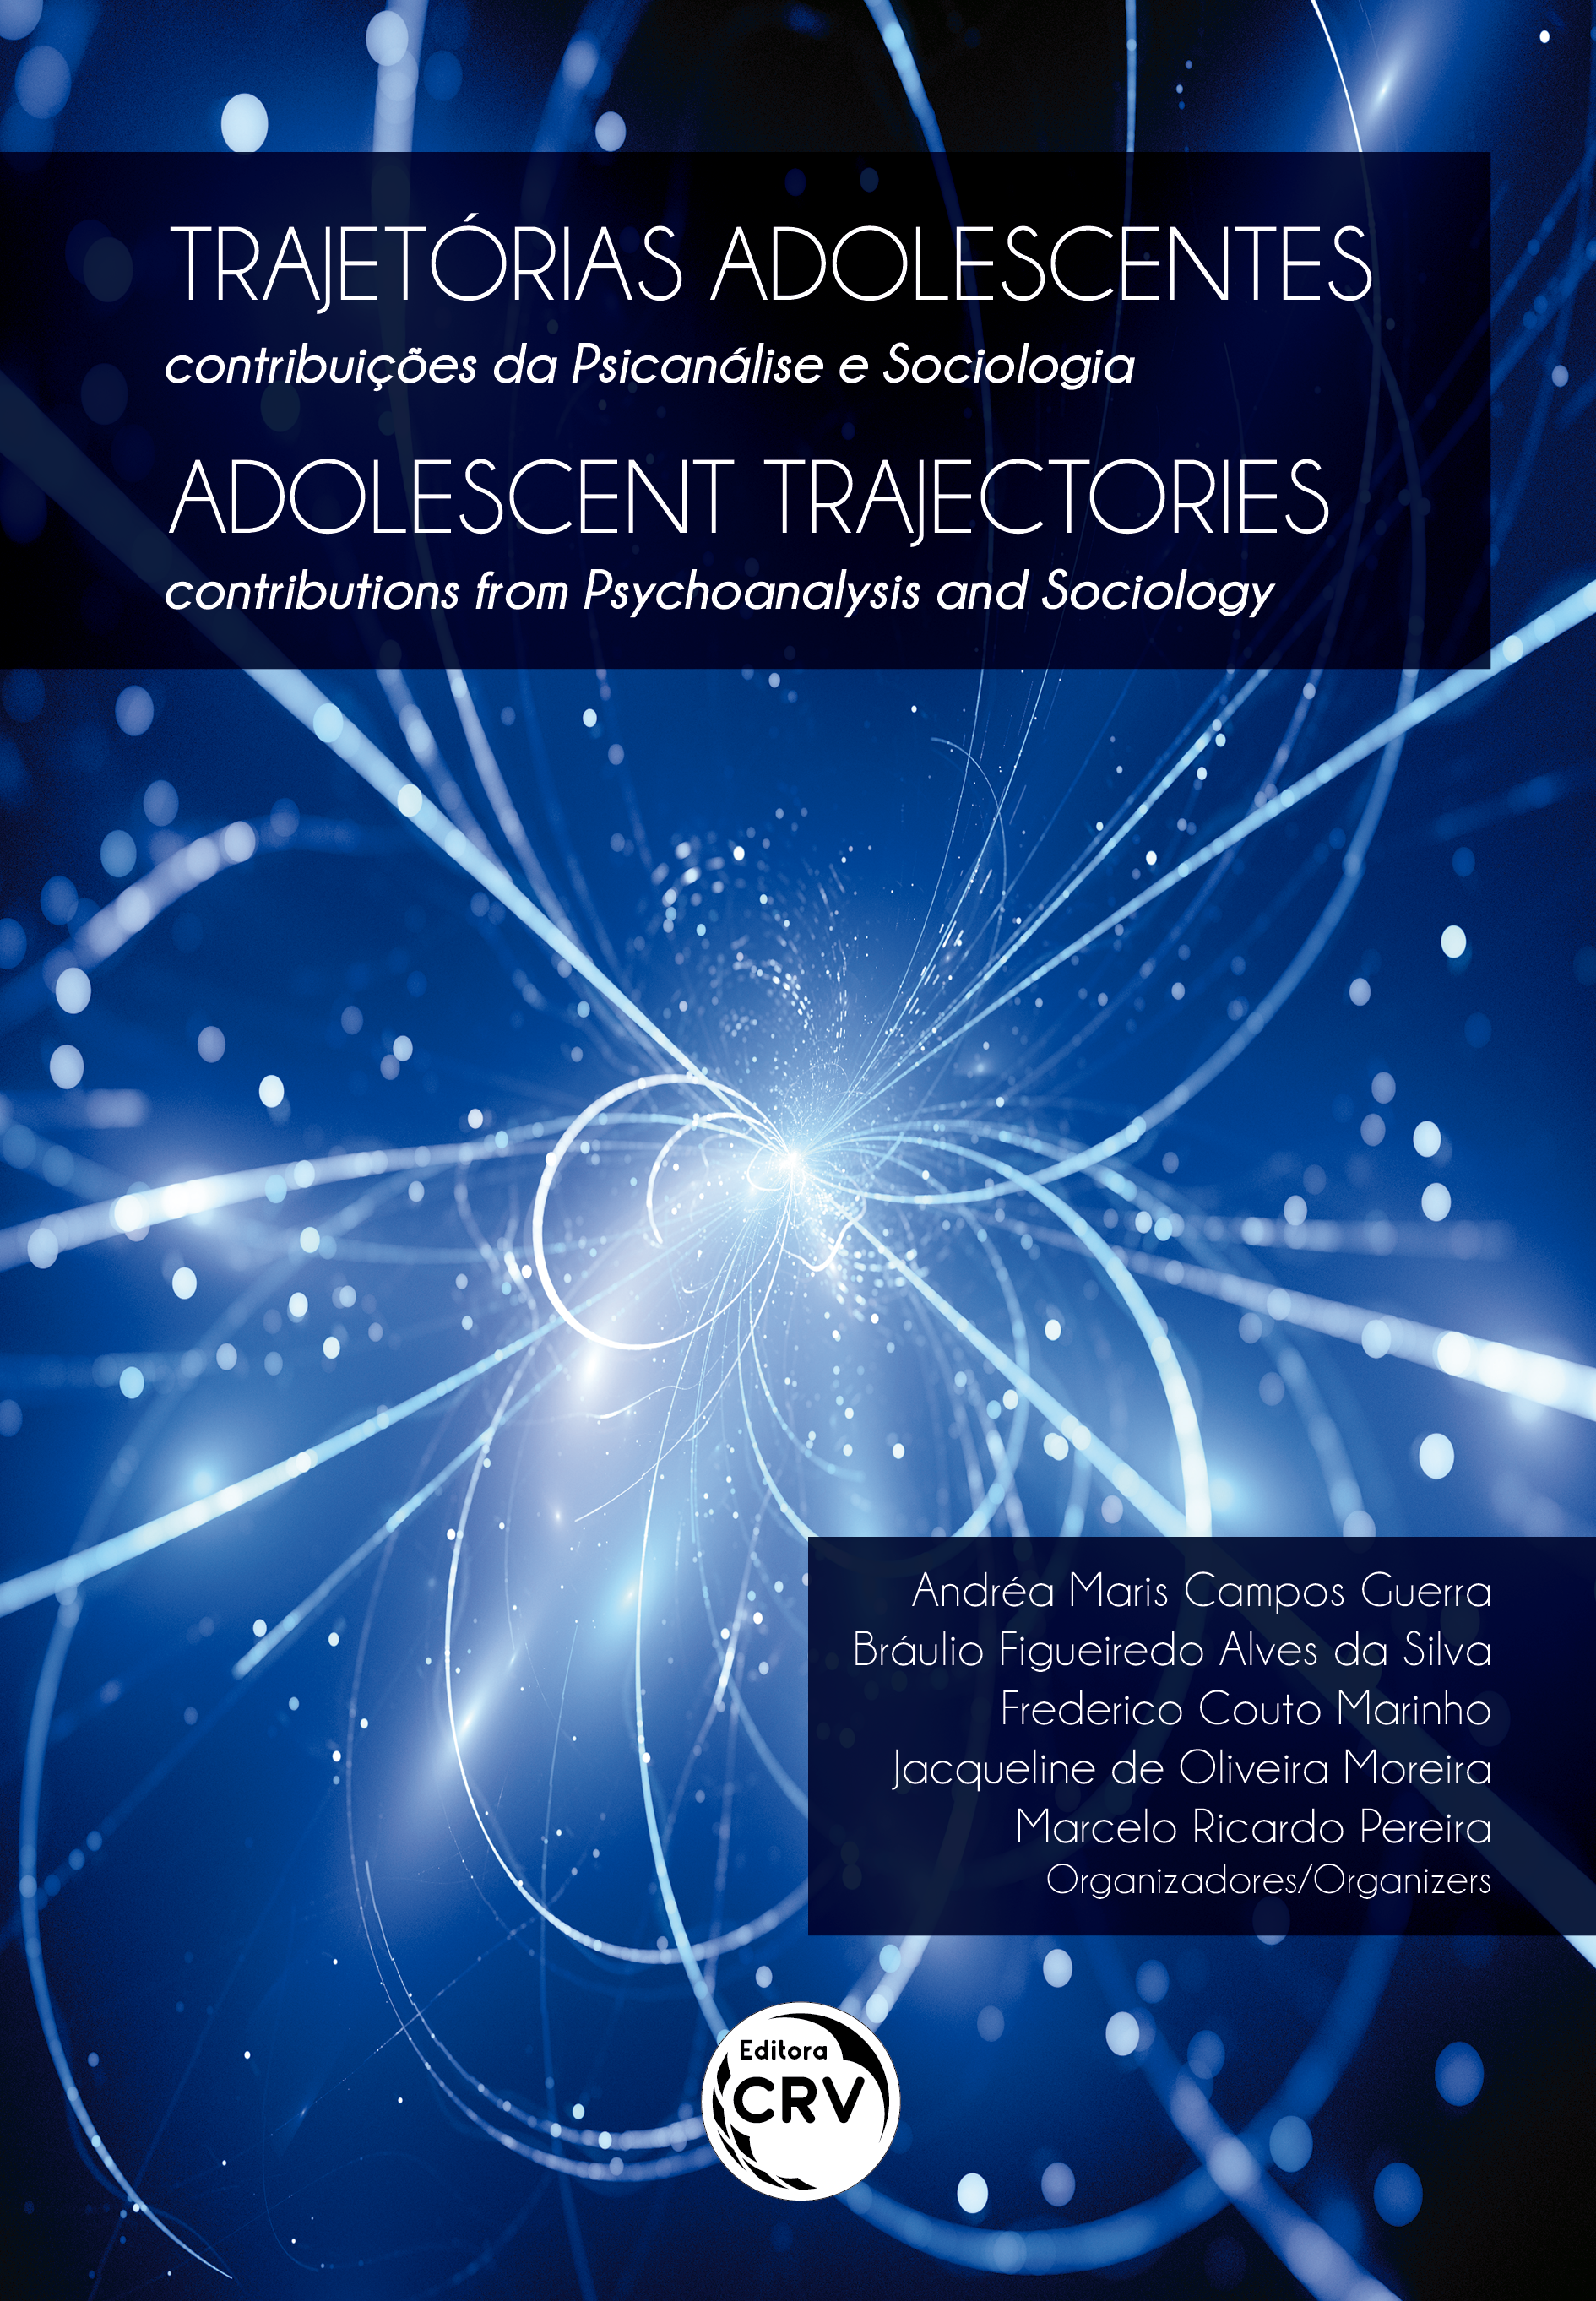 Capa do livro: TRAJETÓRIAS ADOLESCENTES<br> Contribuições da psicanálise e sociologia<br><br> ADOLESCENT TRAJECTORIES: <br>contributions from Psychoanalysis and Sociology